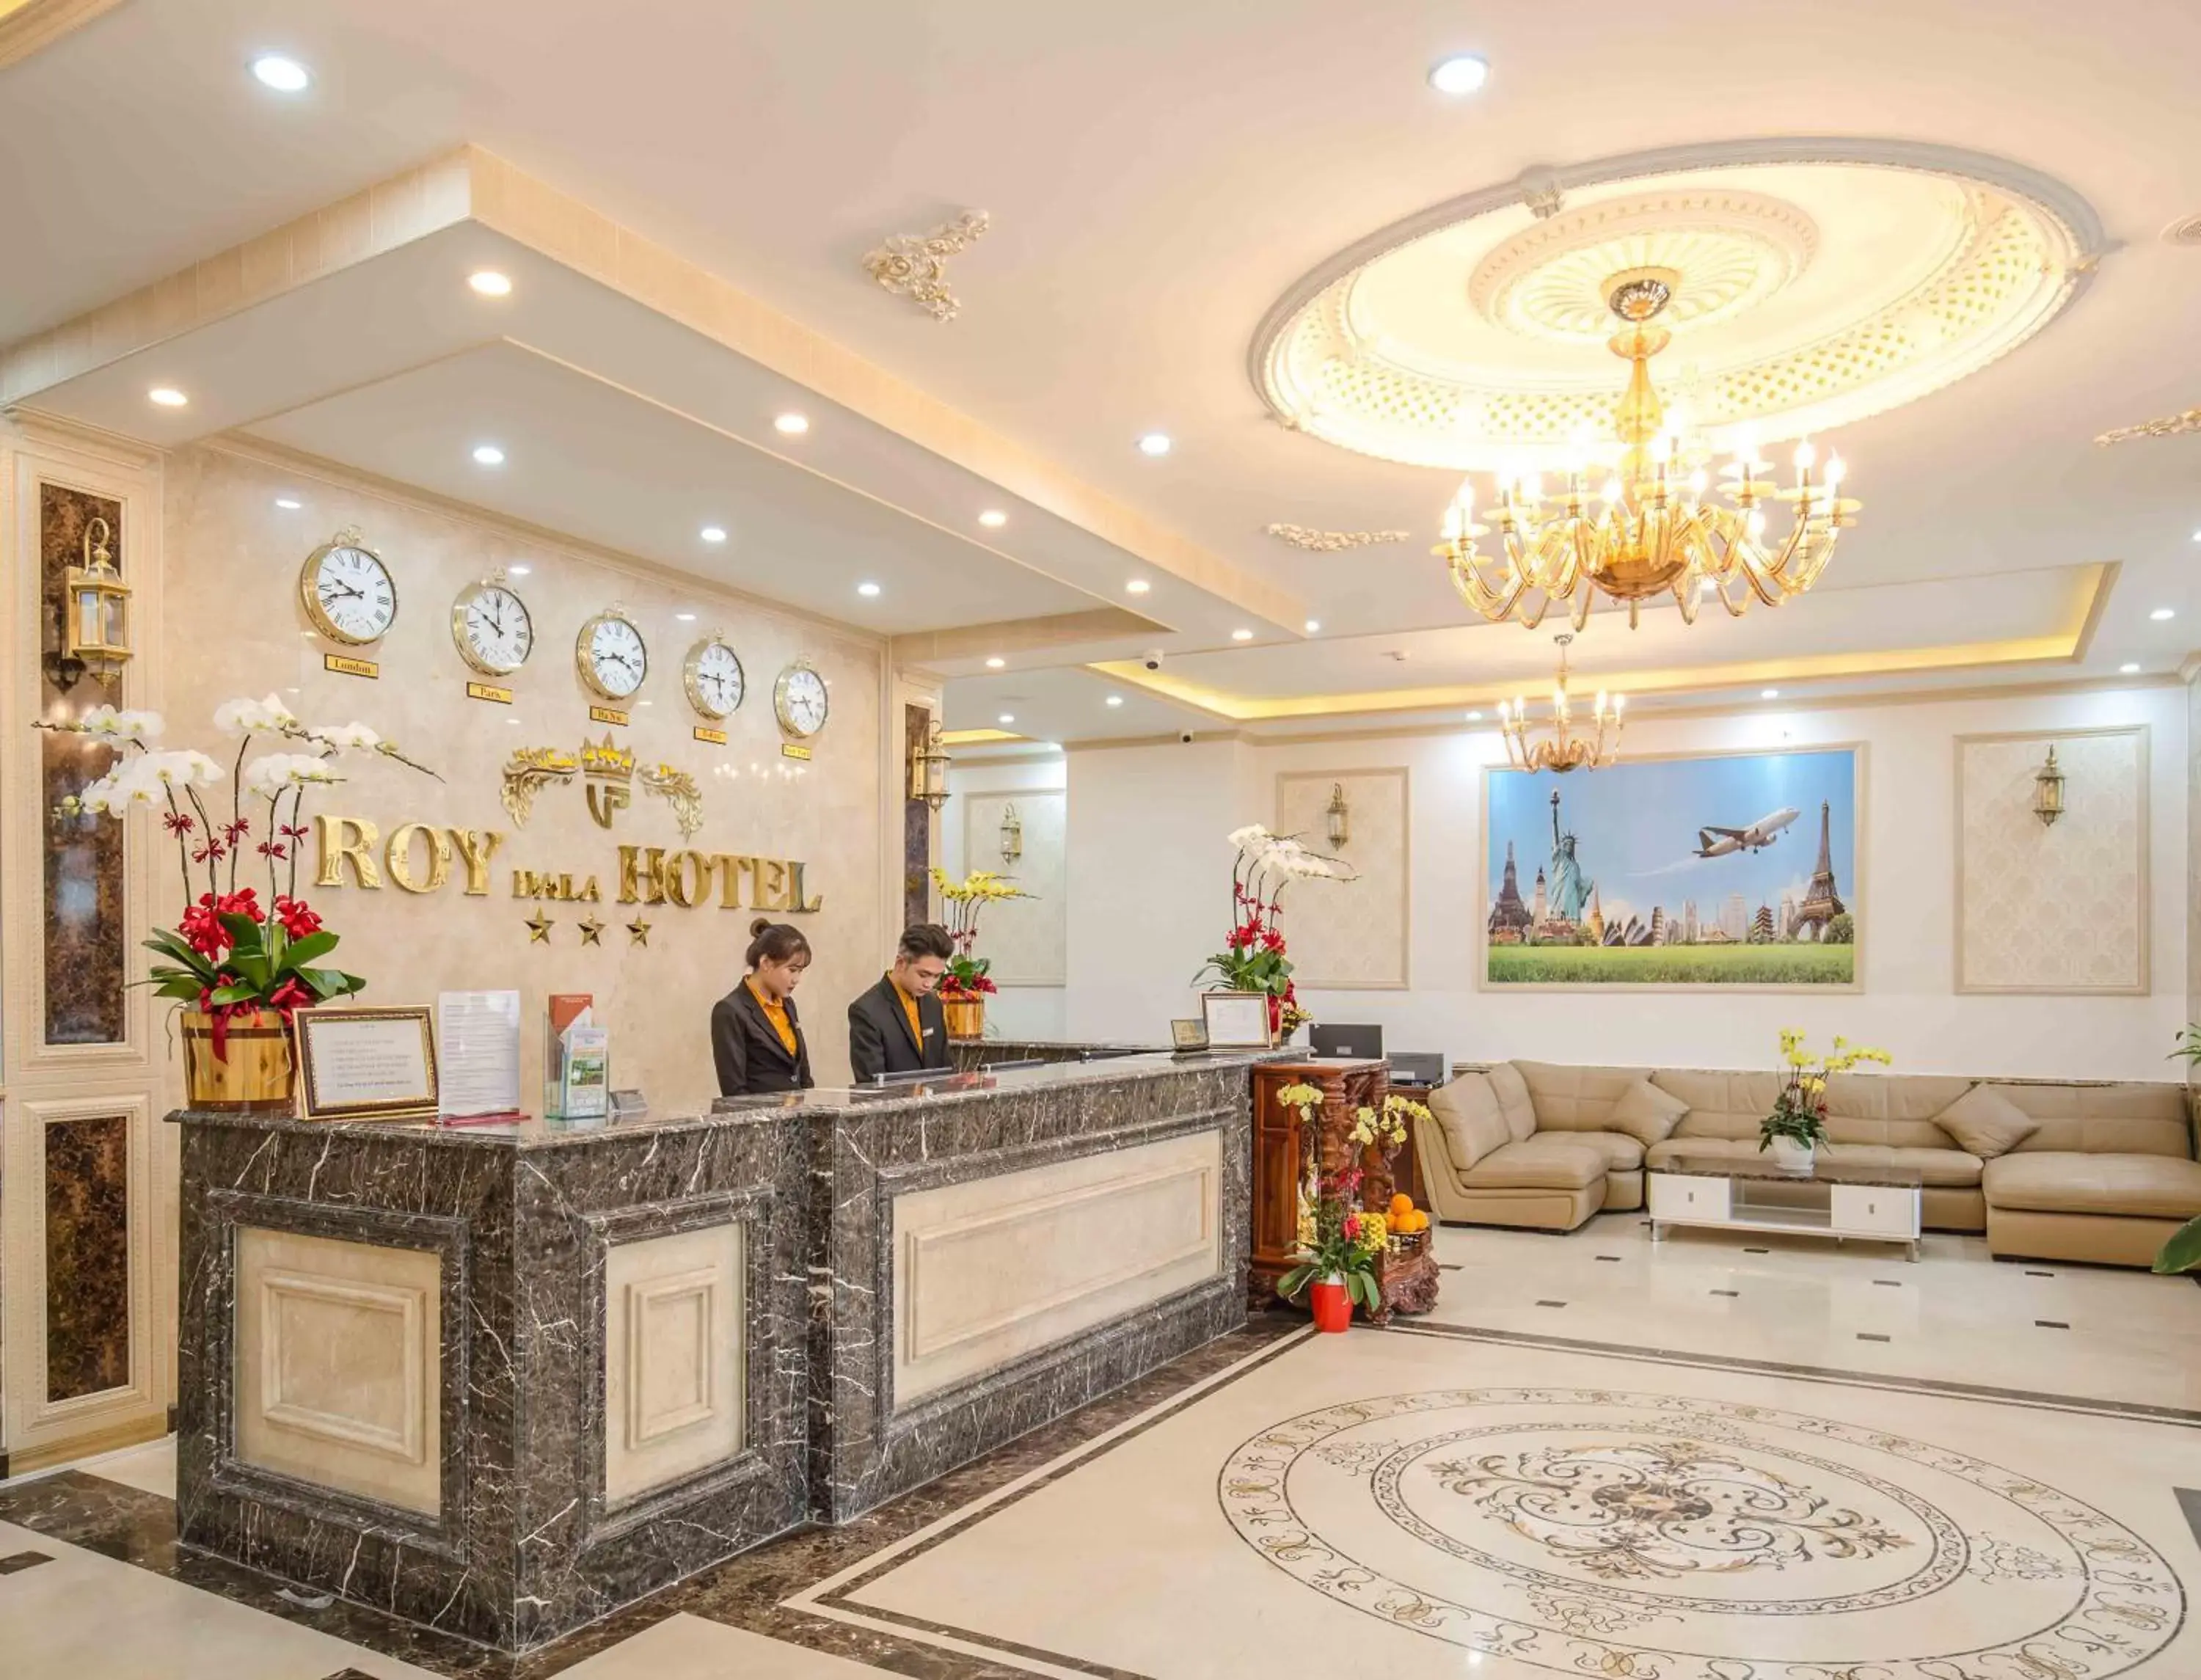 Lobby or reception, Lobby/Reception in Roy Dala Hotel